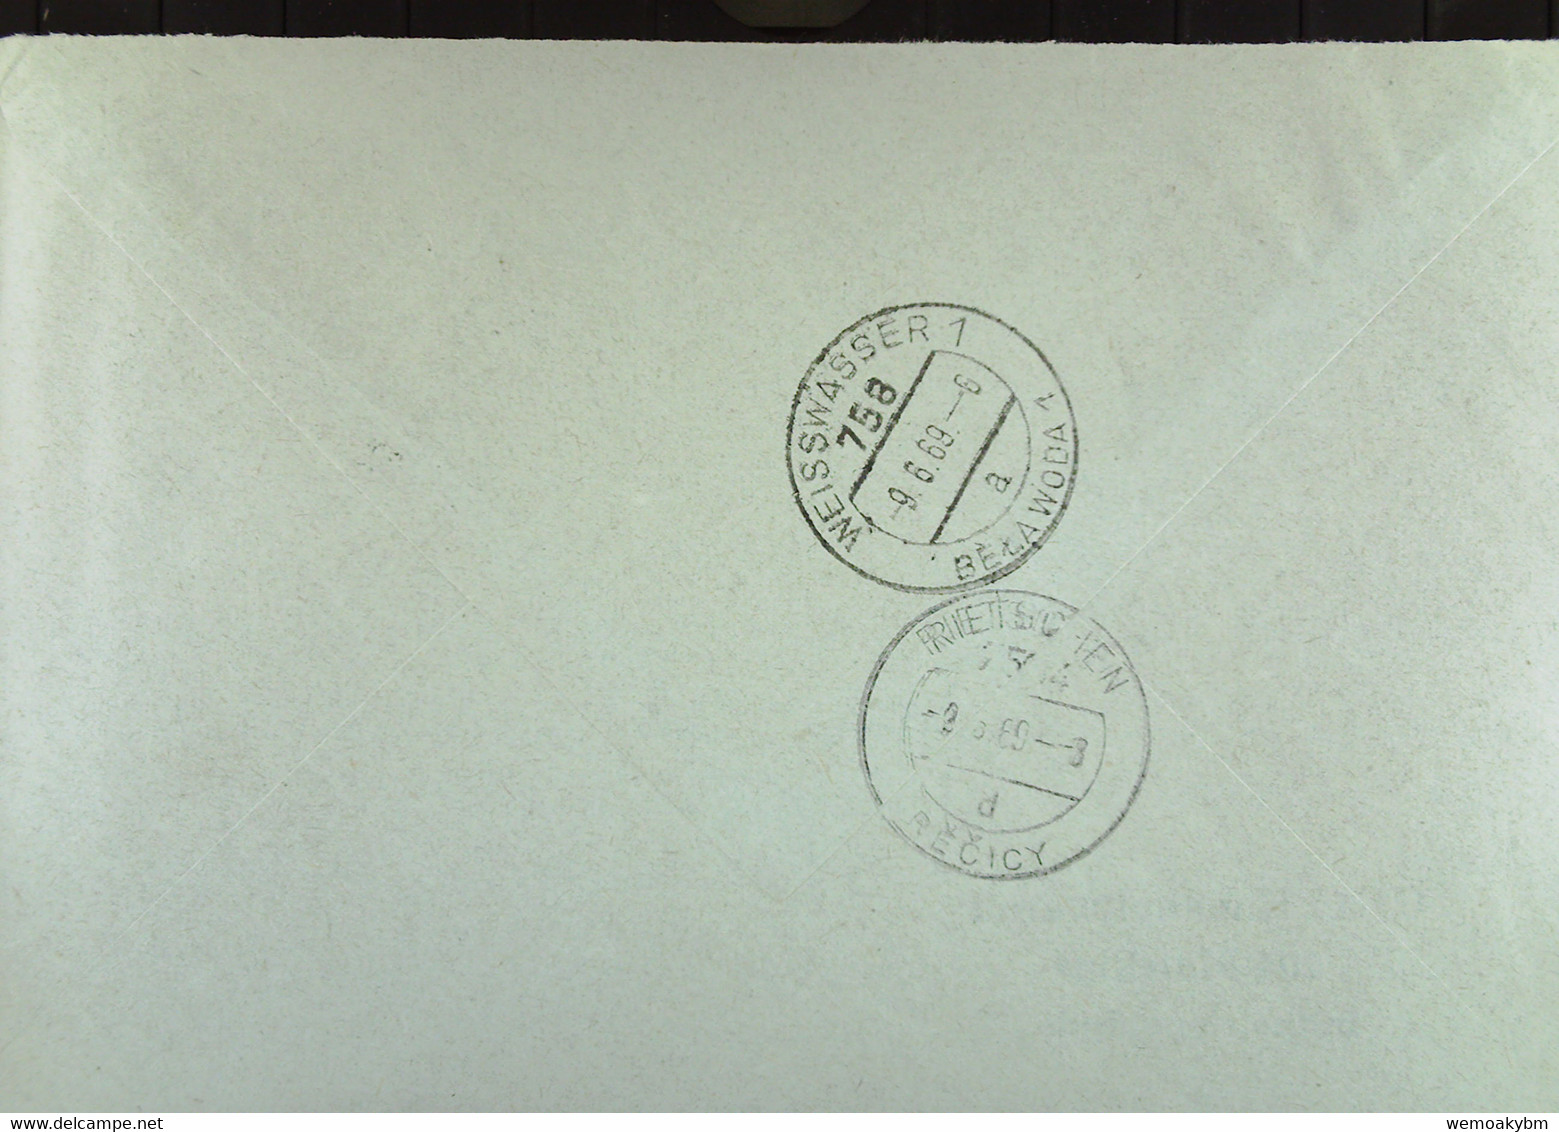 Fern-Brief Mit ZKD-Kastenstpl. "GHG Haushaltswaren 204 MALCHIN" 6.6.69 An Glaswerk Rietschen/RECICY Mit Eing-Stpl - Cartas & Documentos